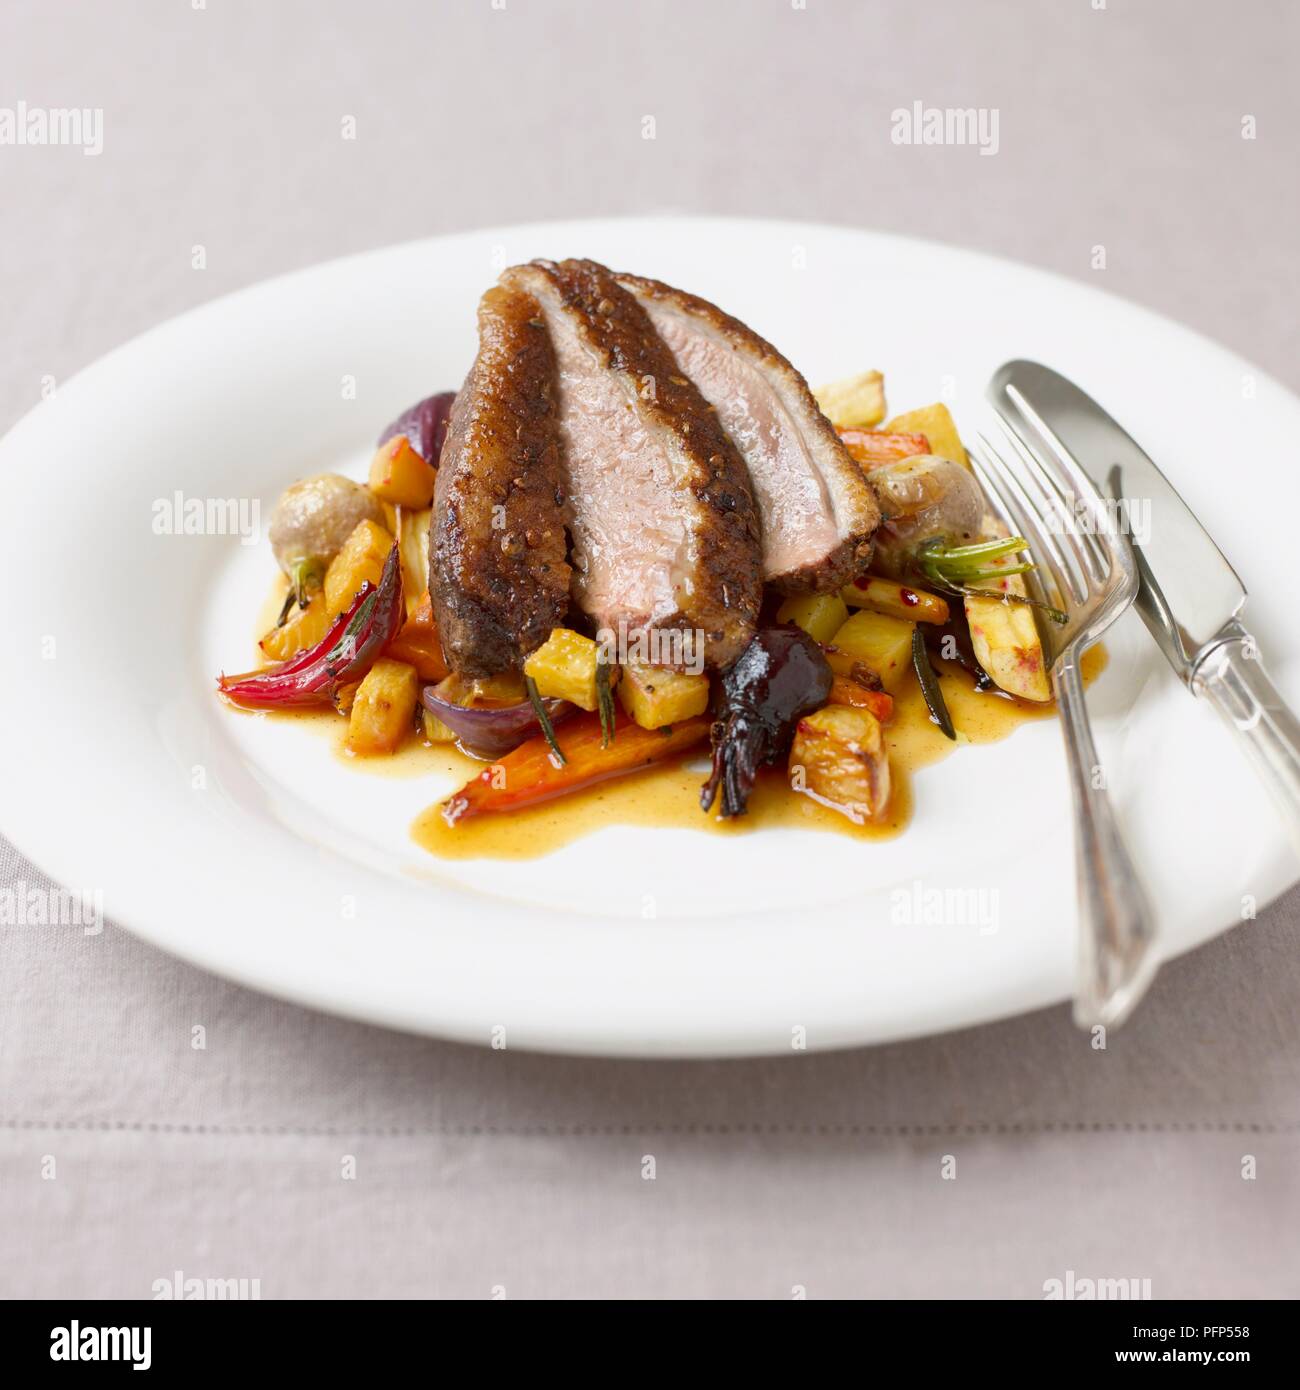 Gebratene Ente mit gehacktem und gerösteten Gemüse auf weißen Teller mit Messer und Gabel serviert. Stockfoto